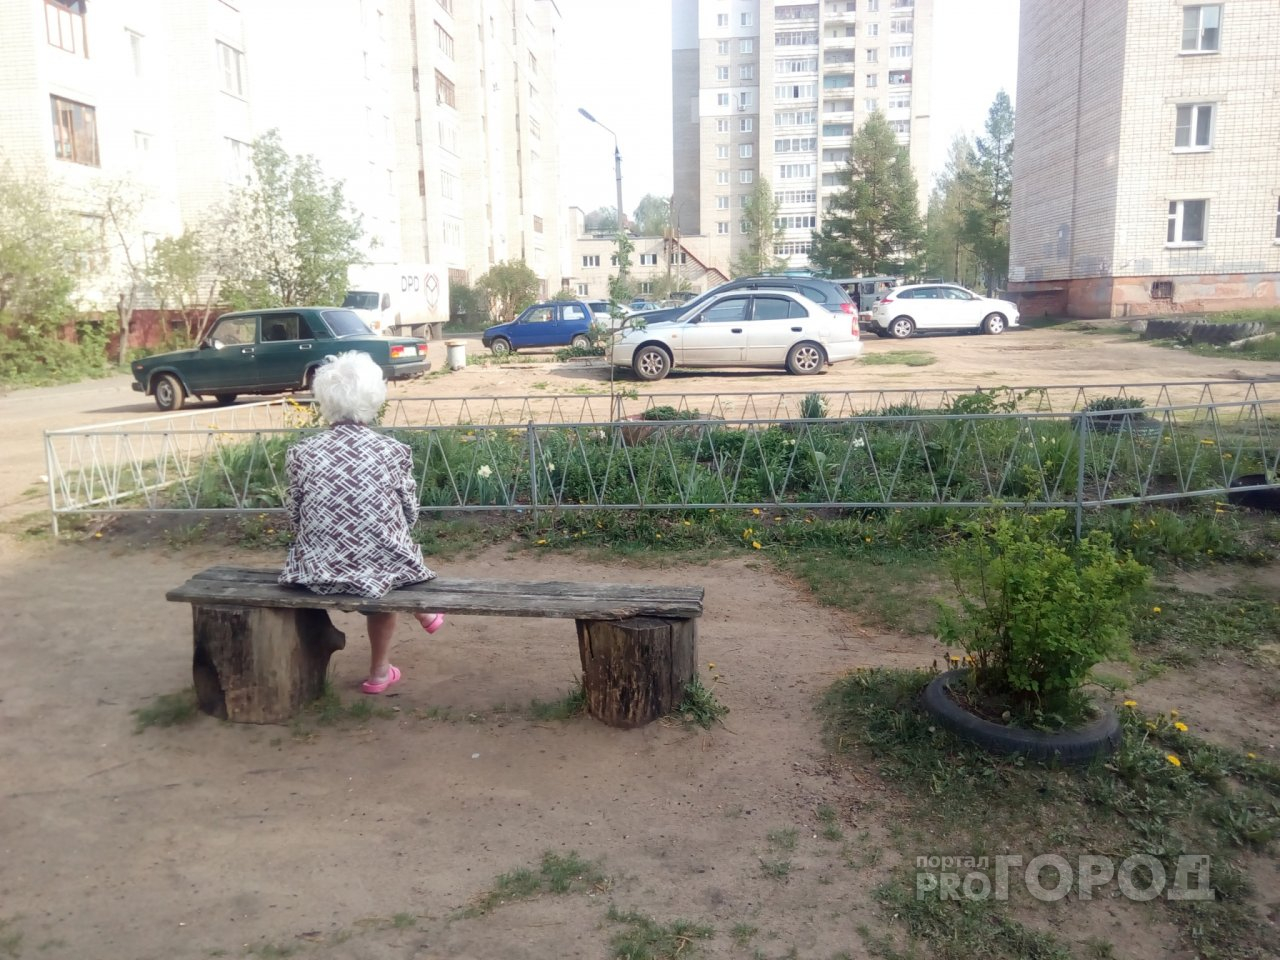 "Прошли все круги ада": ярославцы нашли связь между 90-ми и потерей пенсий